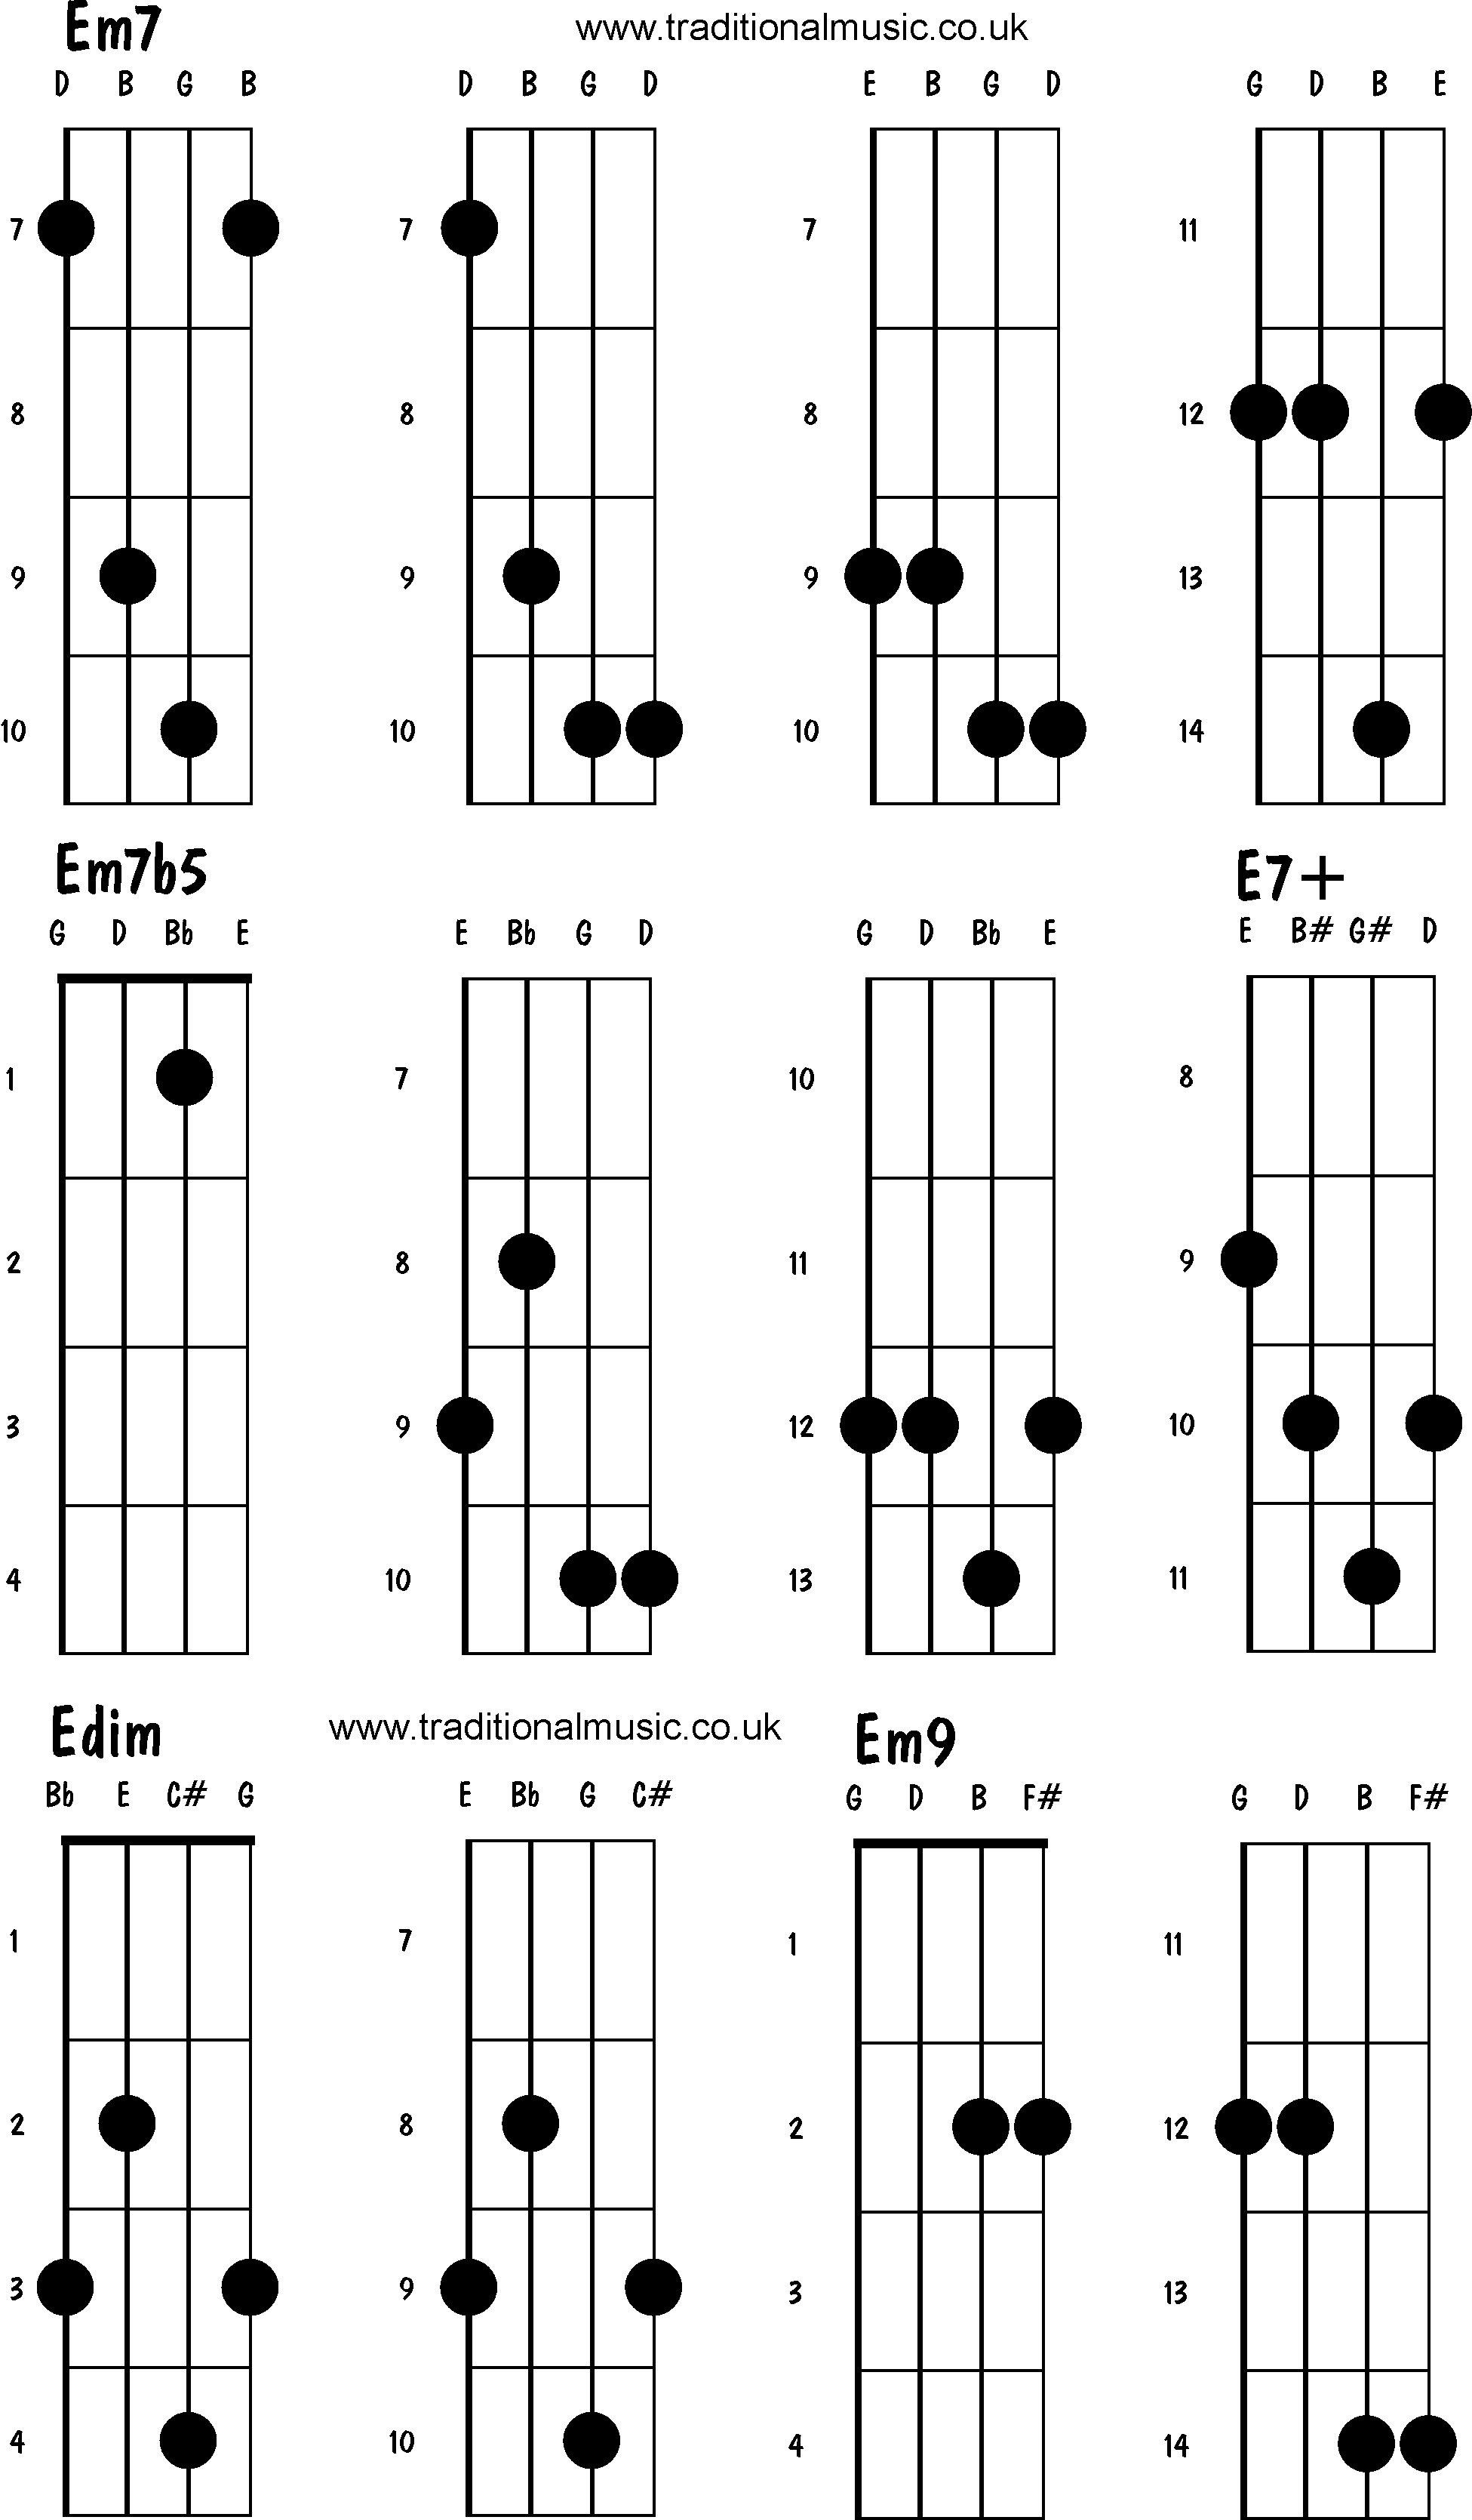 Advanced mandolin chords: Em7, Em7b5, E7+, Edim, Em9